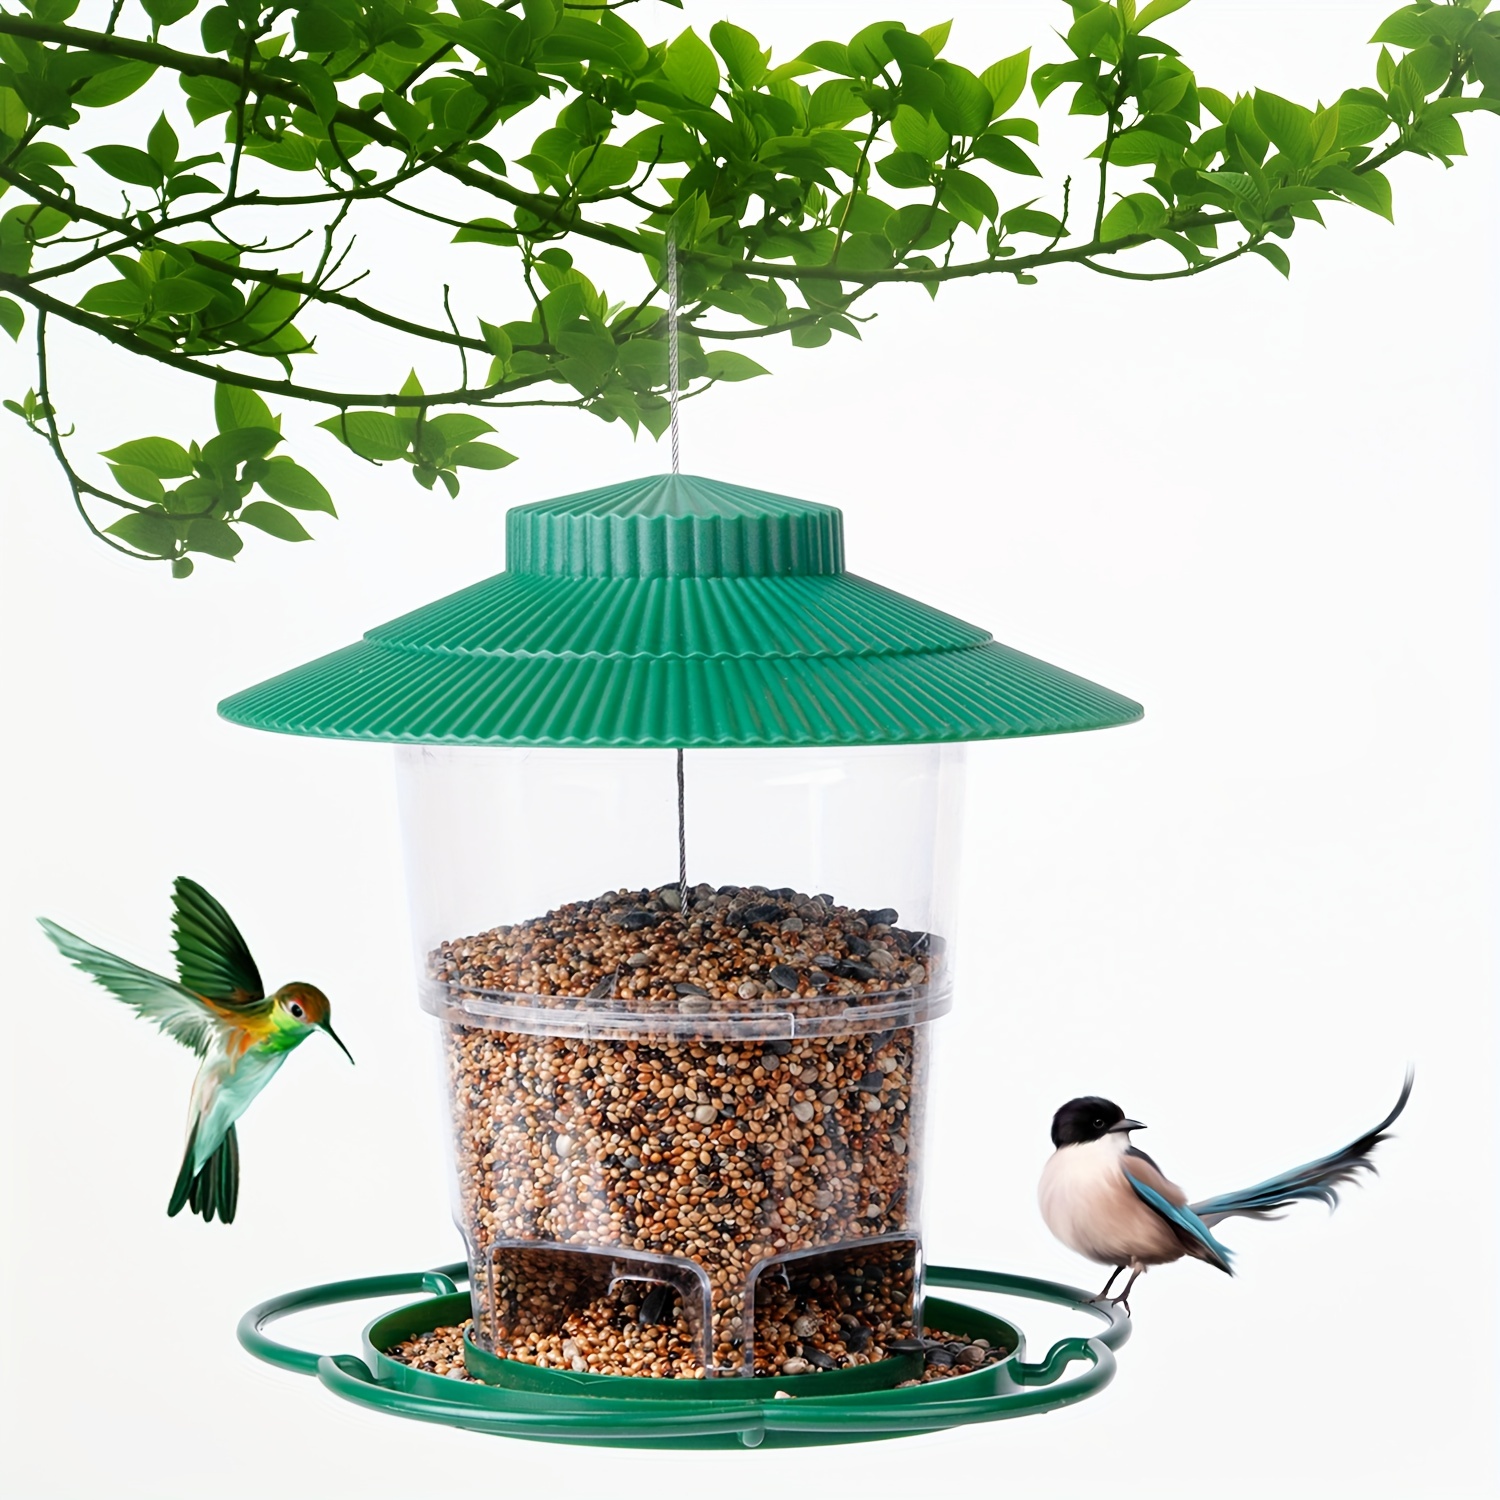 Mangeoire pour oiseaux exterieur et suspendue - Jardiprotec